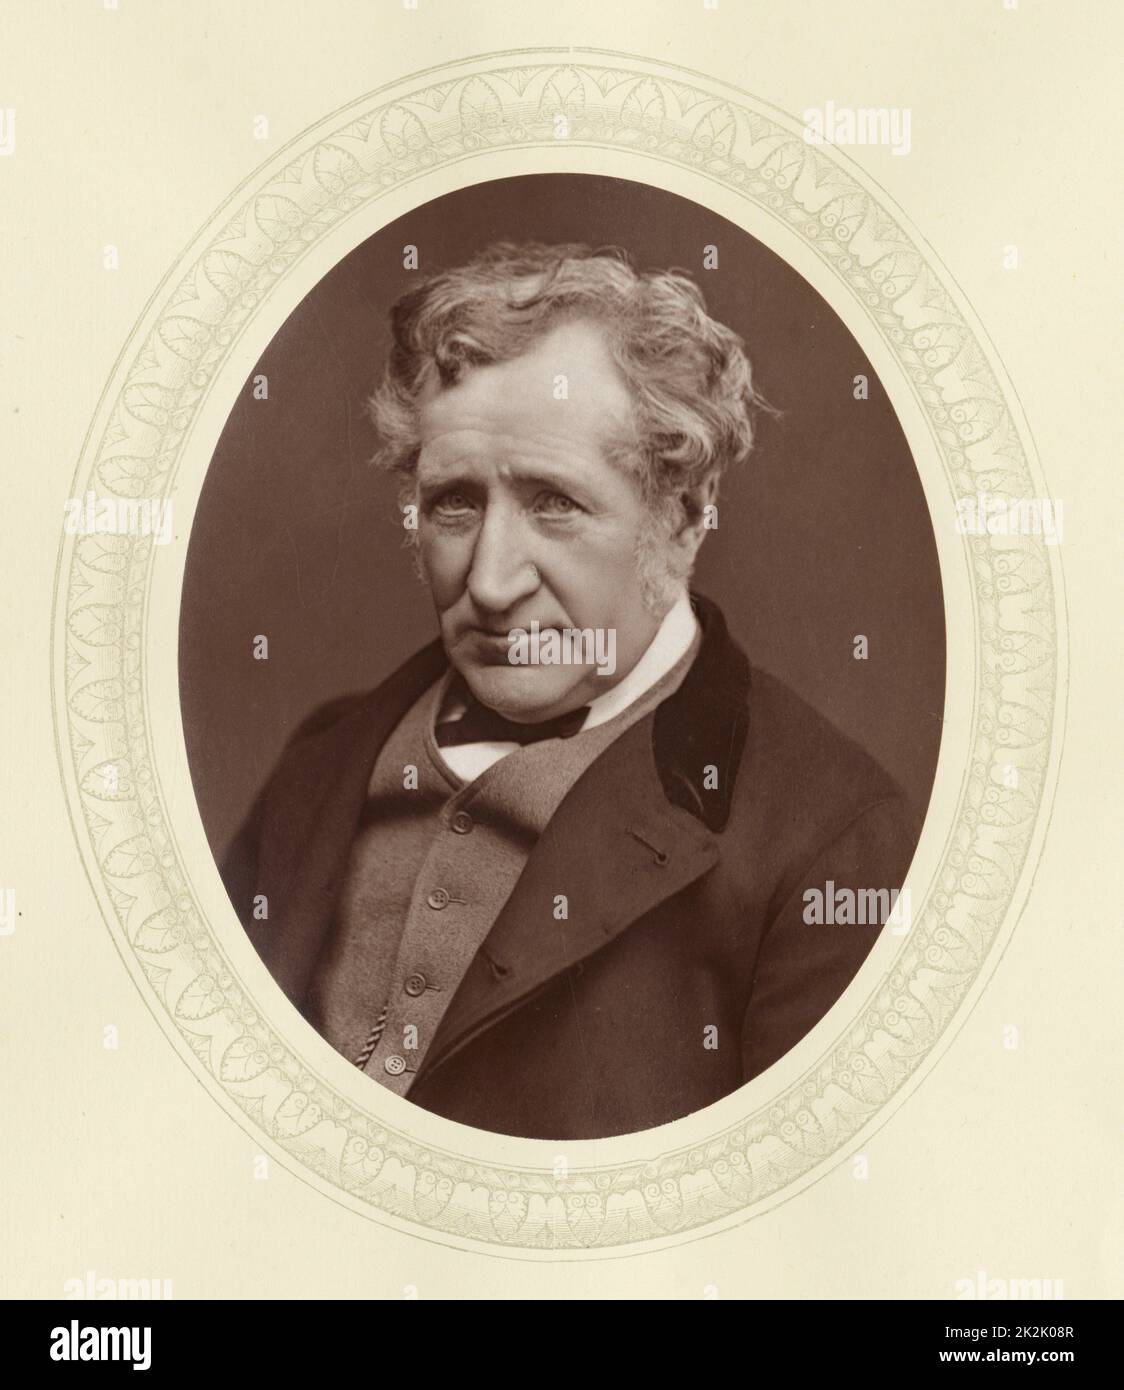 James Hall Nasmyth (1808-1890) c1877, ingénieur, inventeur et astronome écossais. Son invention la plus célèbre était le marteau à vapeur. Fabricant de machines-outils. A pris sa retraite à 48 ans pour se concentrer sur ses passe-temps, l'astronomie et la photographie. Banque D'Images